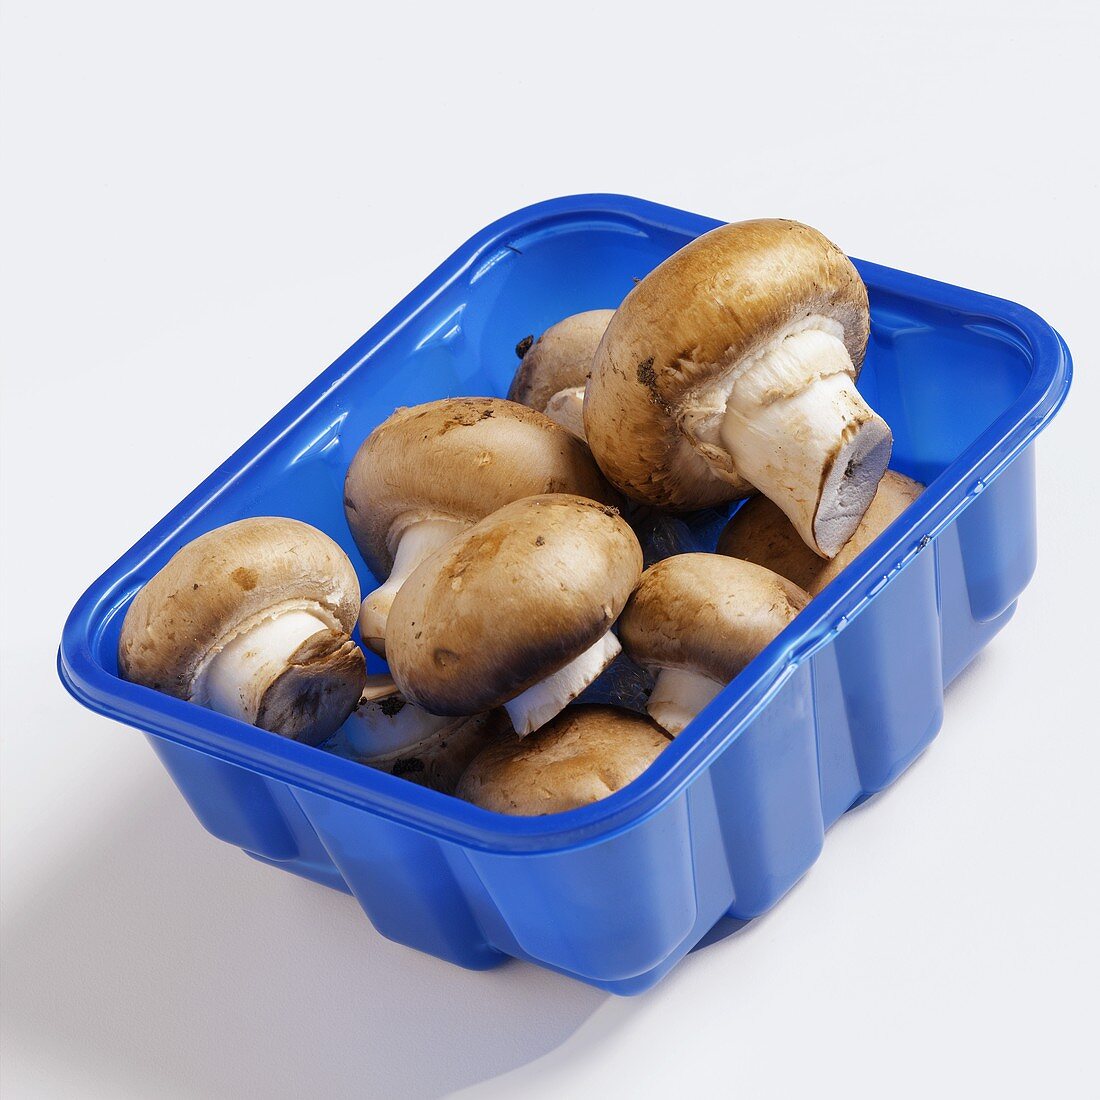 Chestnut mushrooms in blue plastic punnet